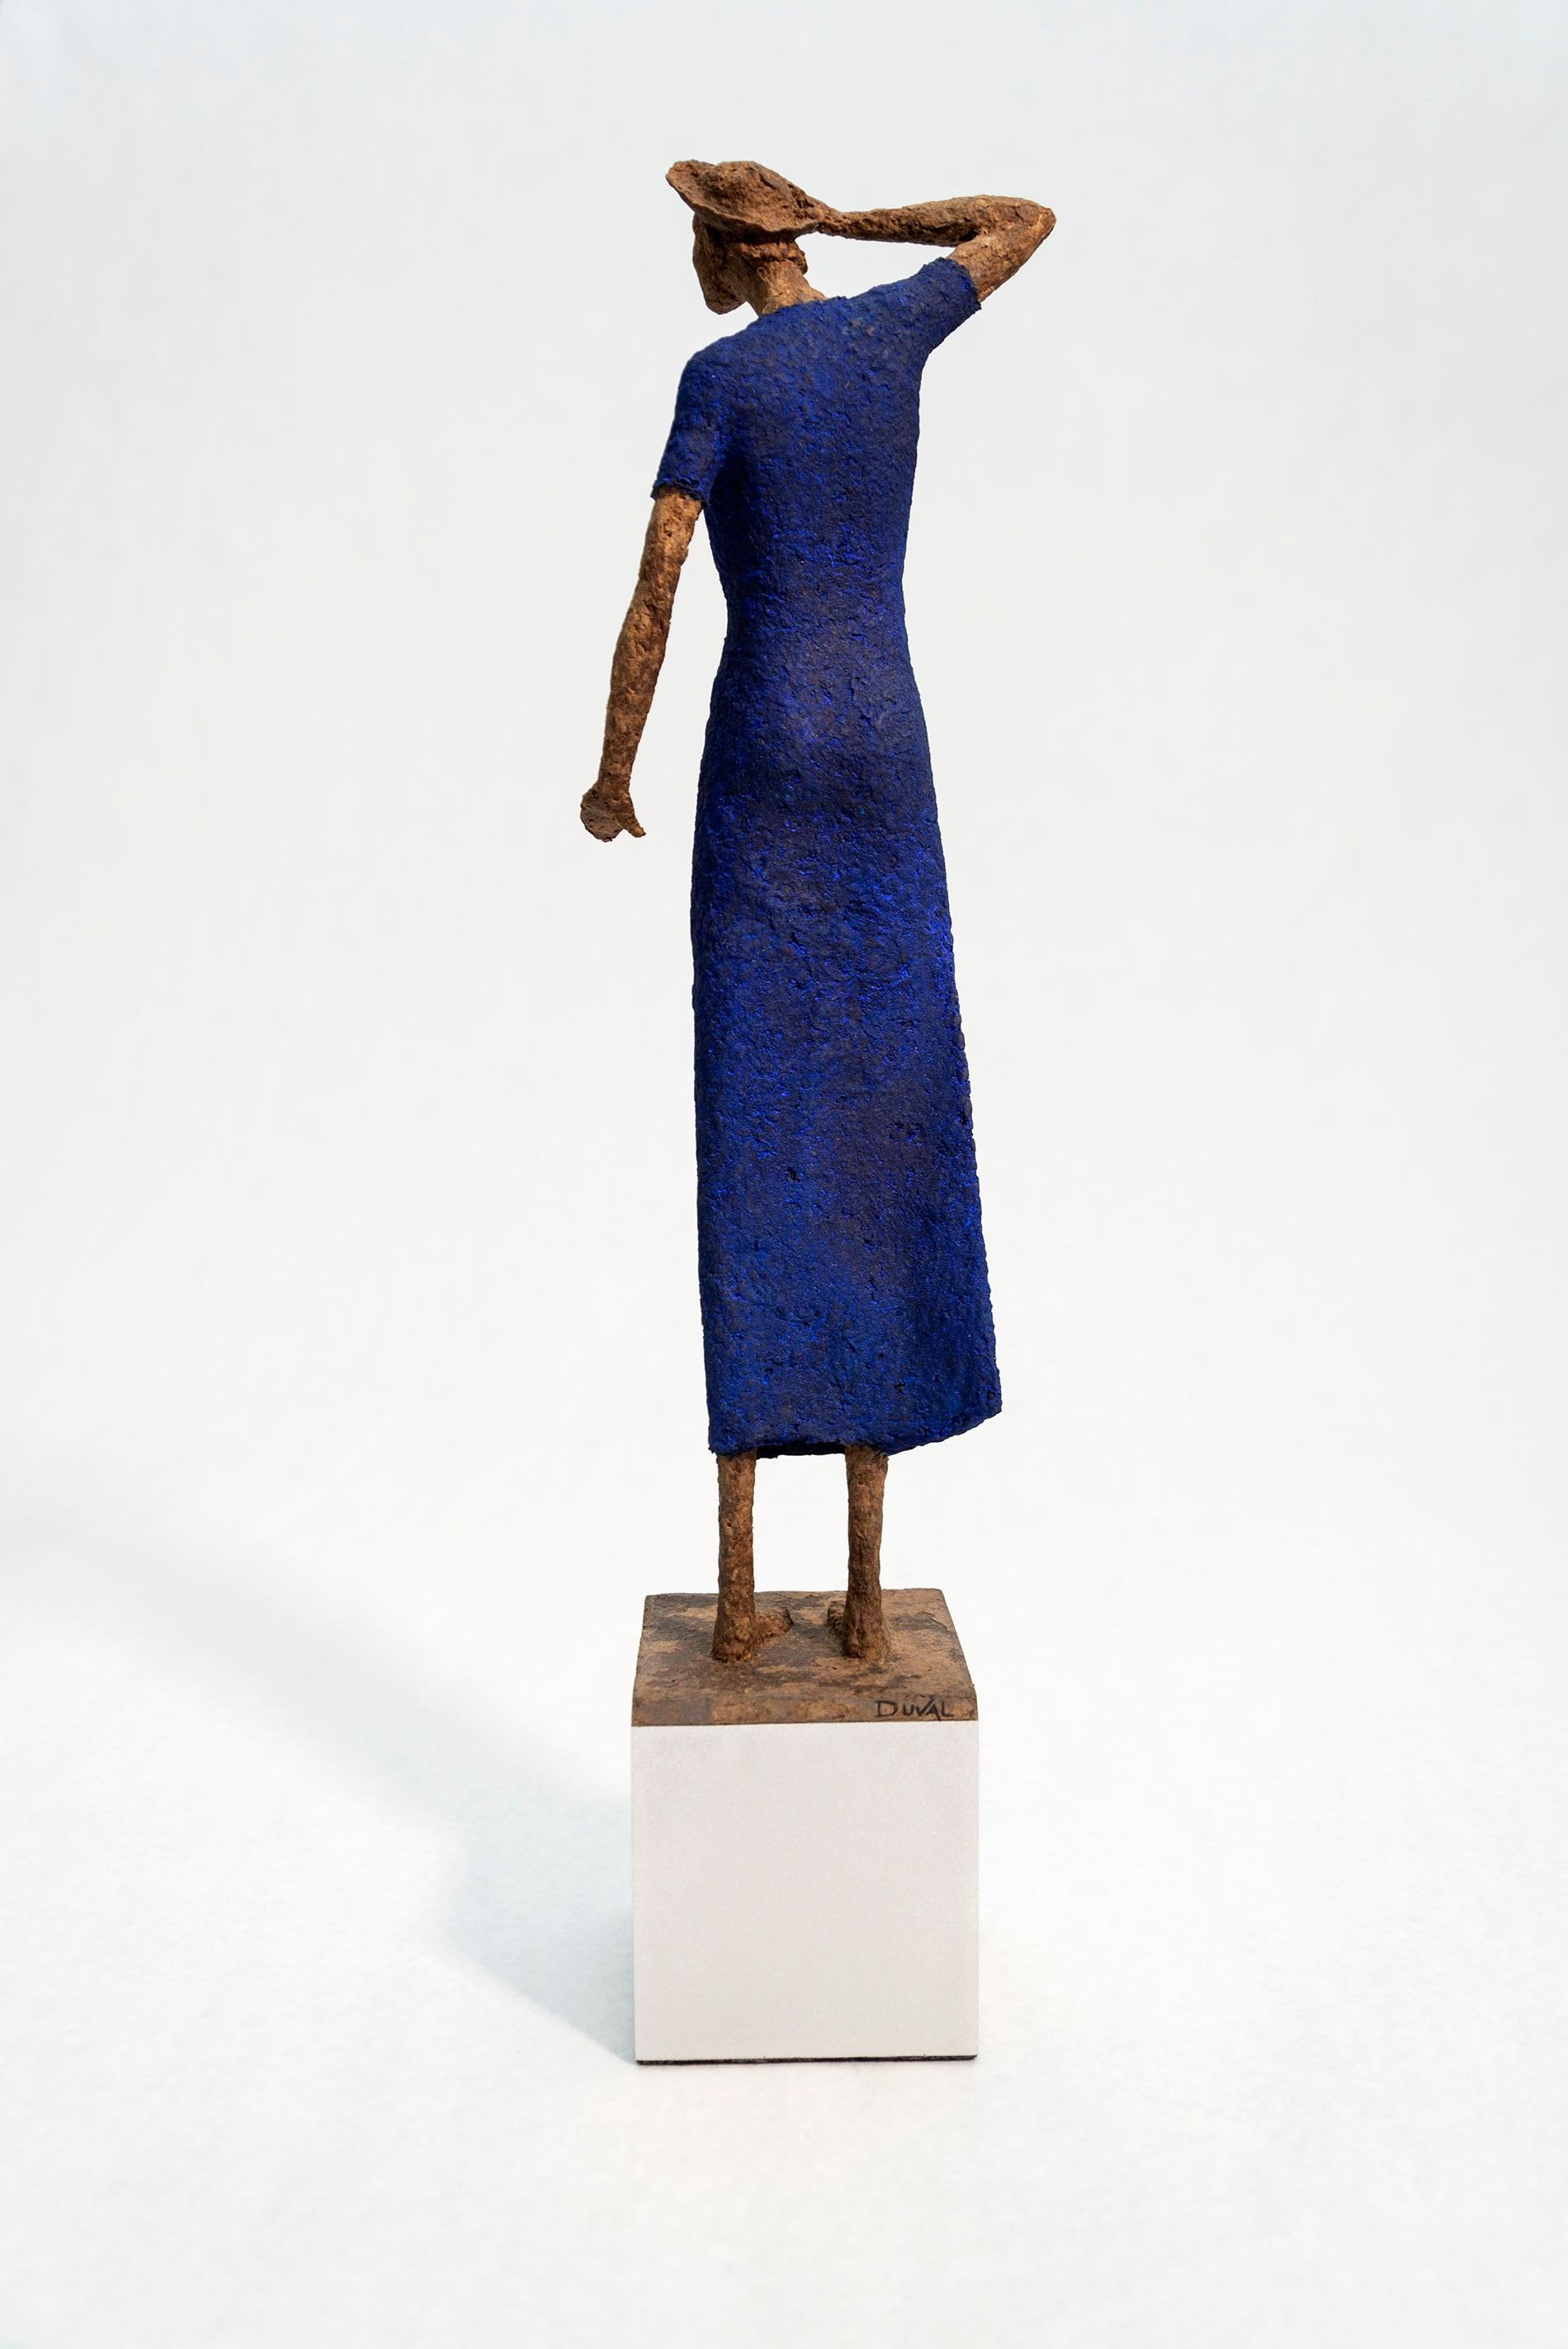 Evangeline - sculpture en papier mâchée expressive, texturée, féminine, figurative - Contemporain Sculpture par Paul Duval